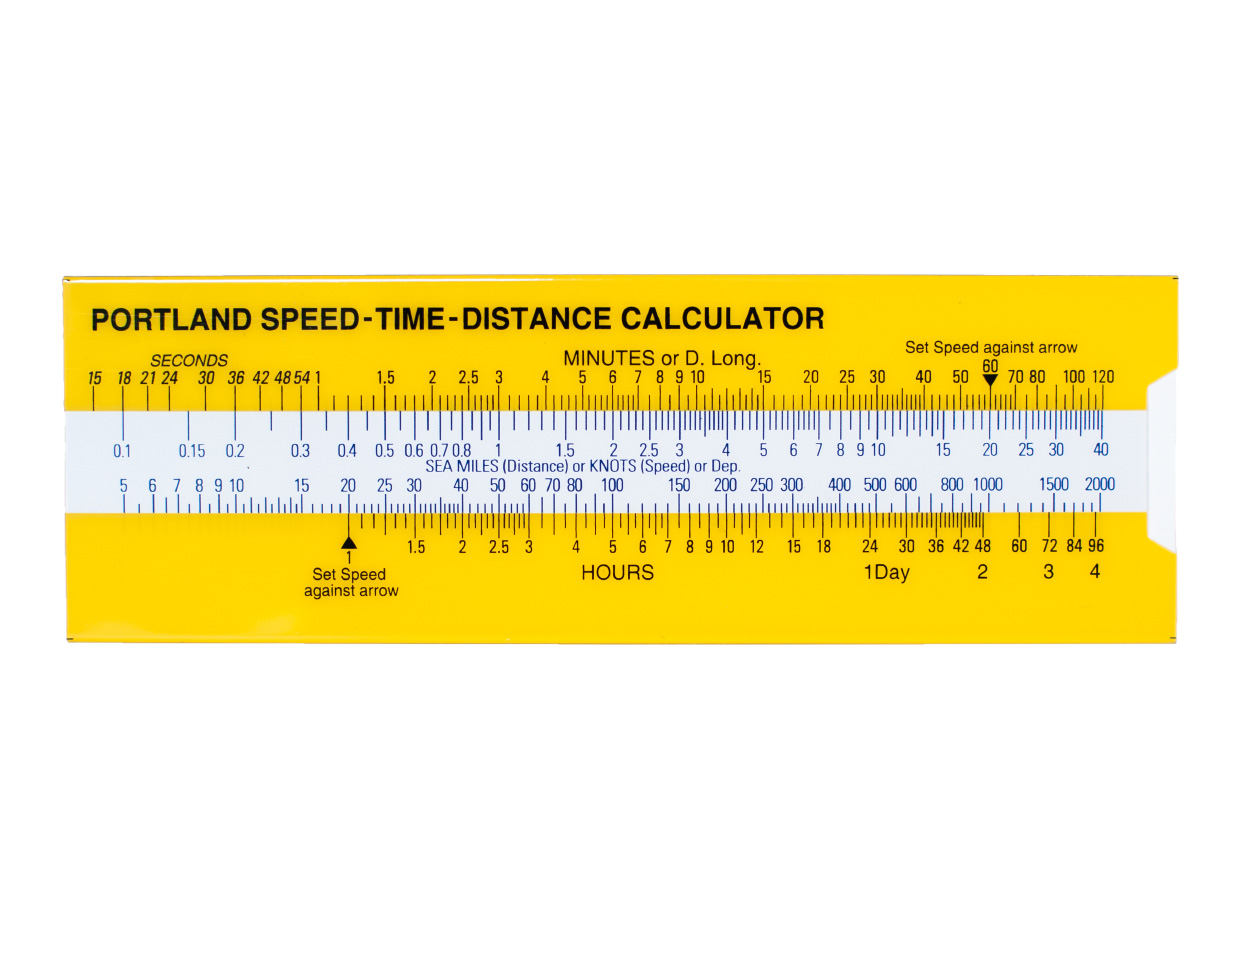 Portland Speed-Time-Distance Calculator 655.31